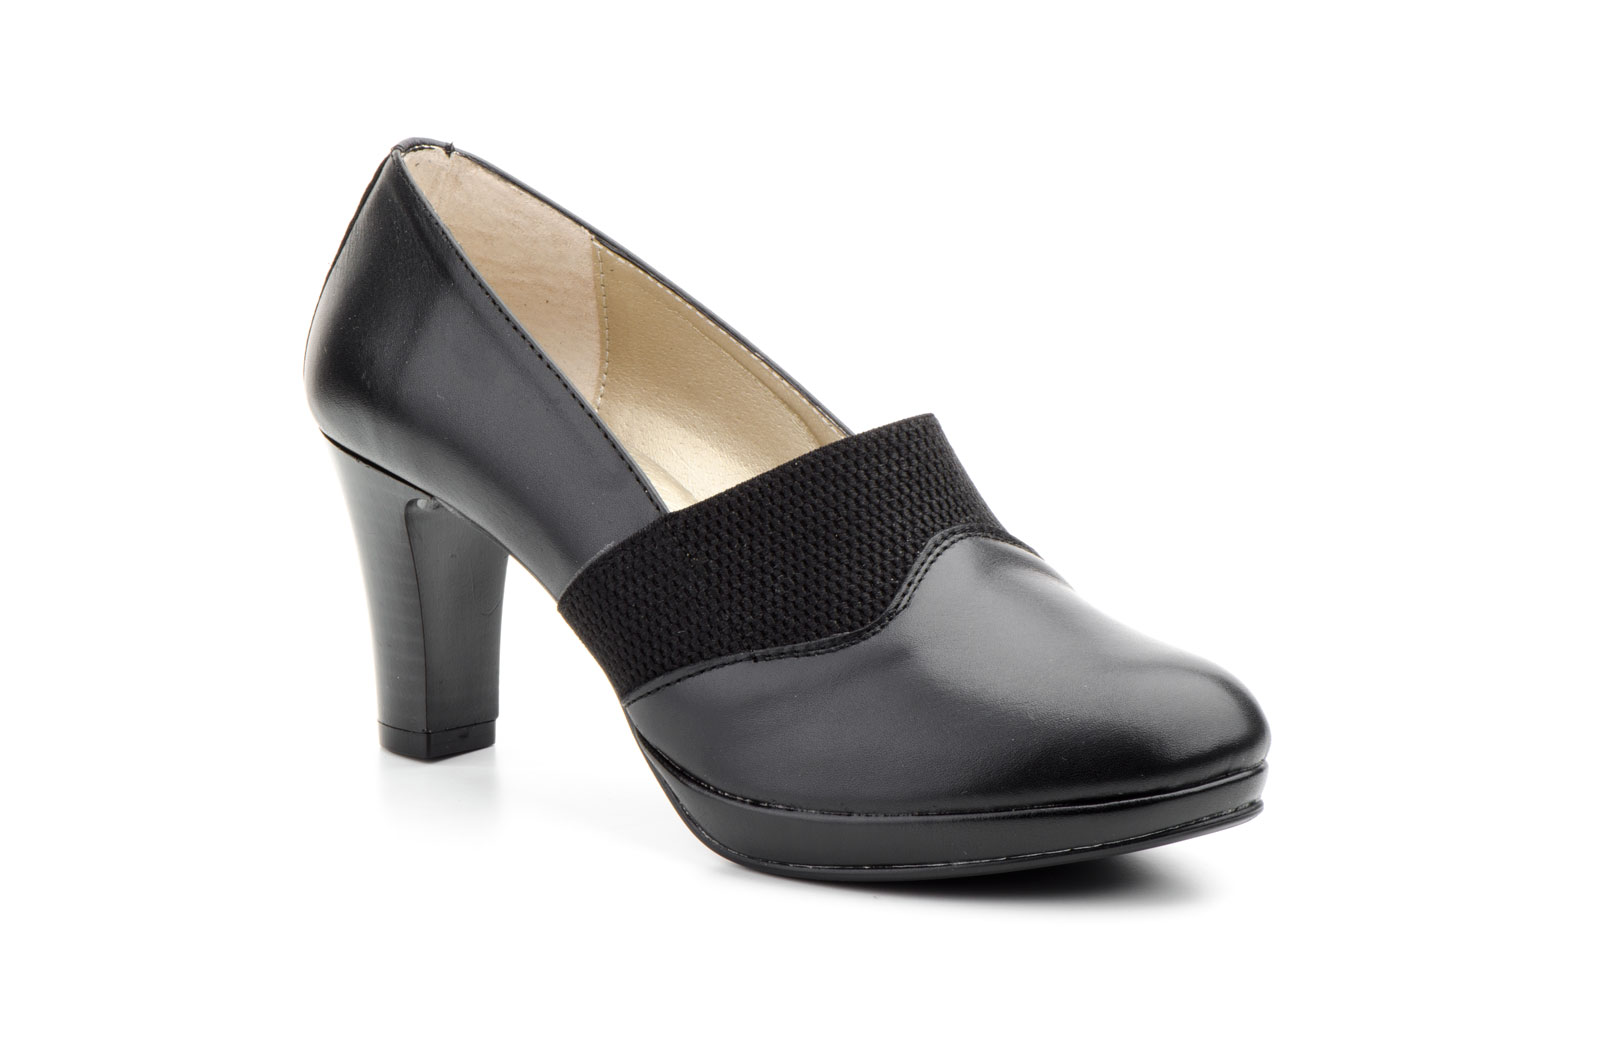 Zapatos Mujer Piel Negro Plataforma Elástico Tacón  -  Ref. 4007 Negro